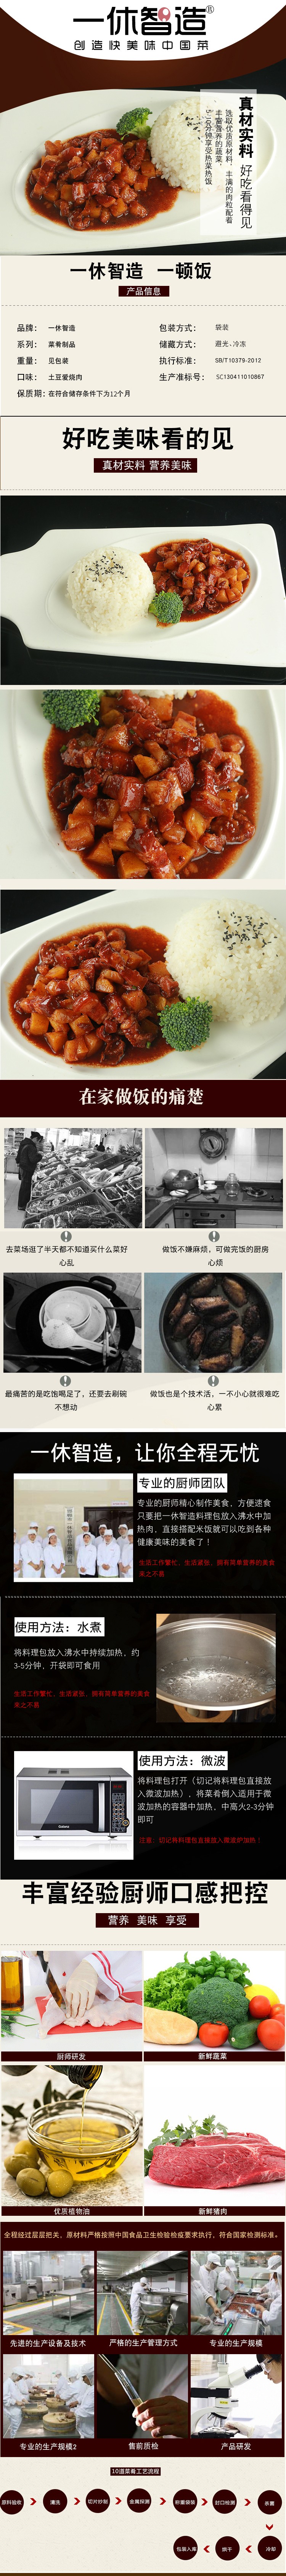 土豆愛燒肉.jpg